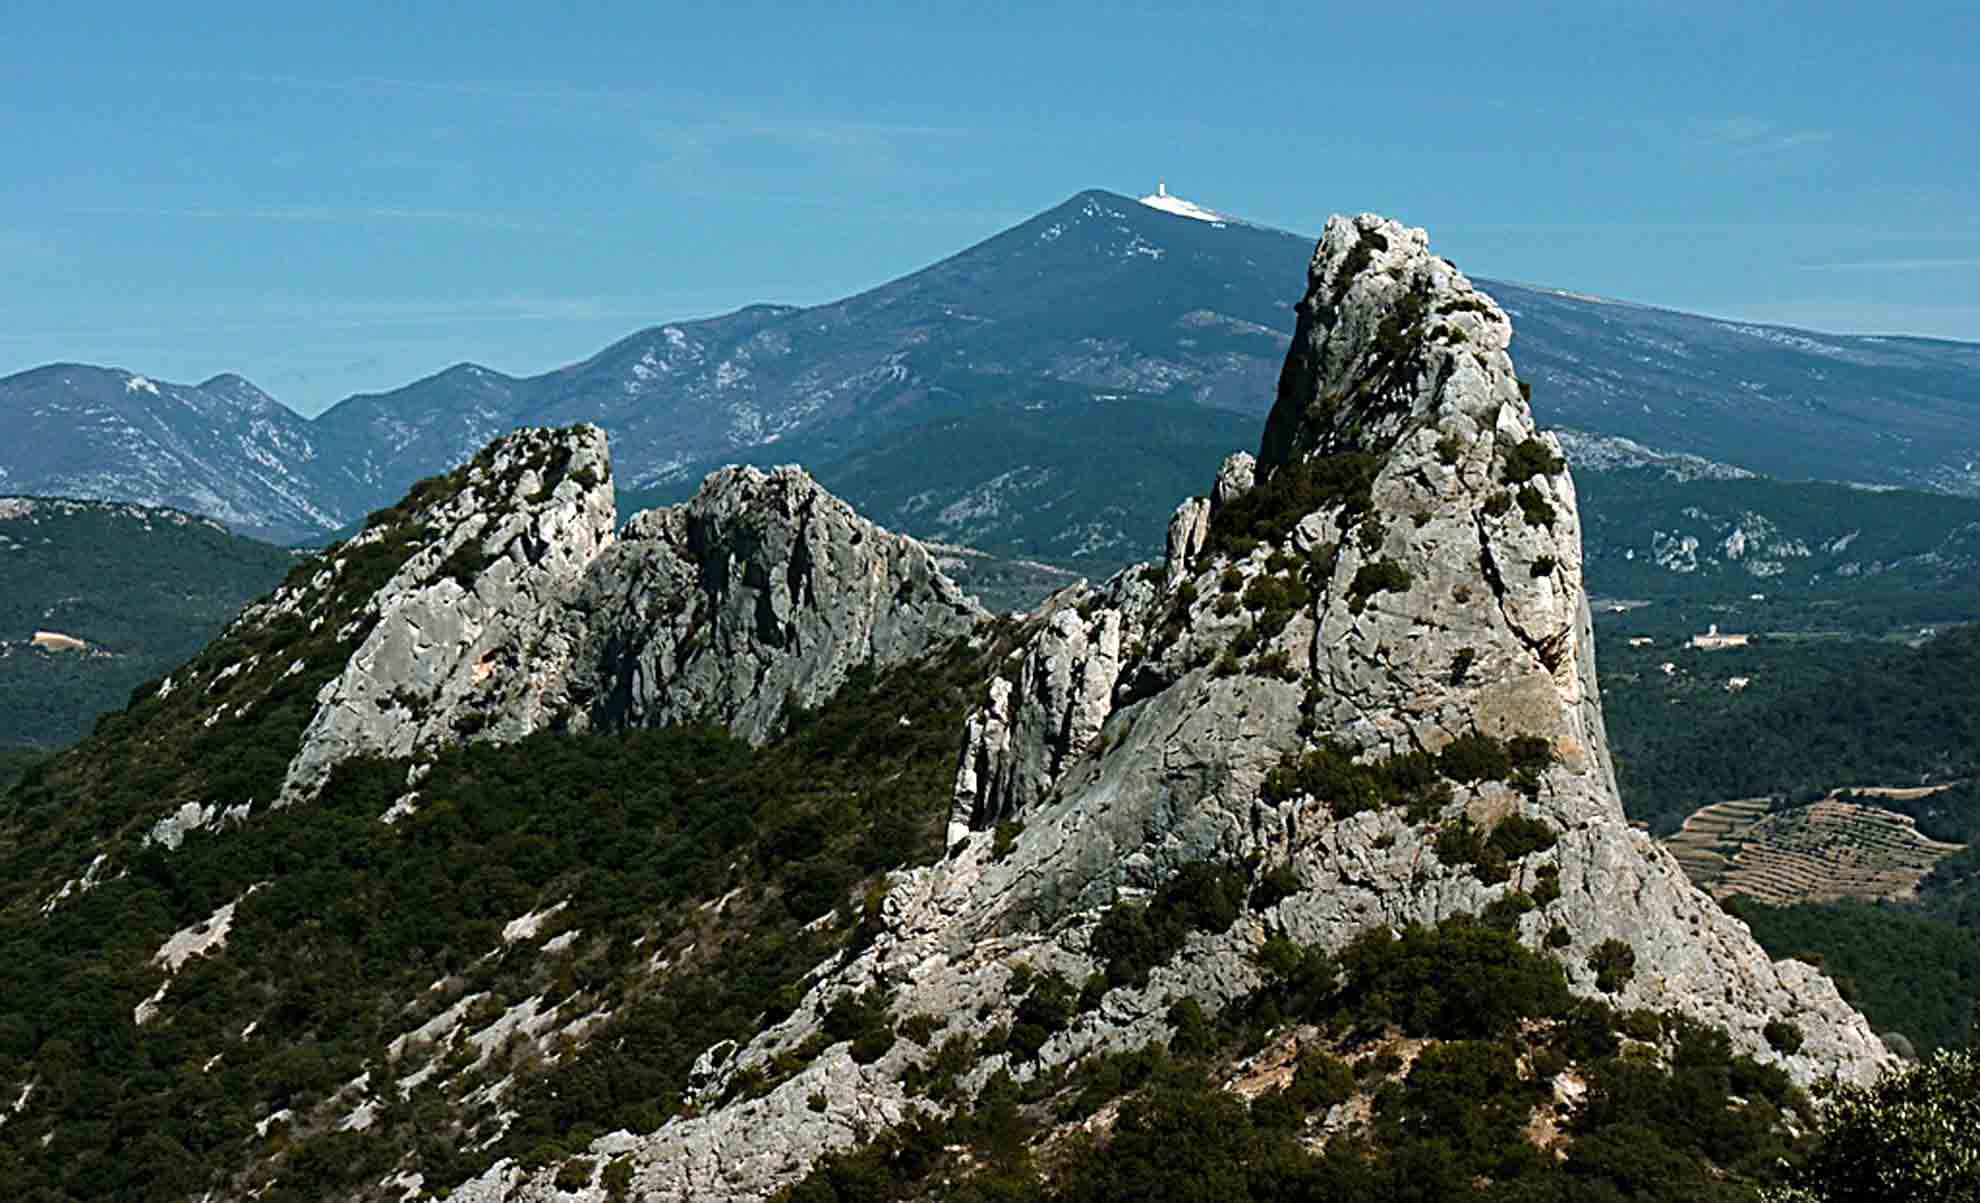 Location de vacances Vaucluse Provence